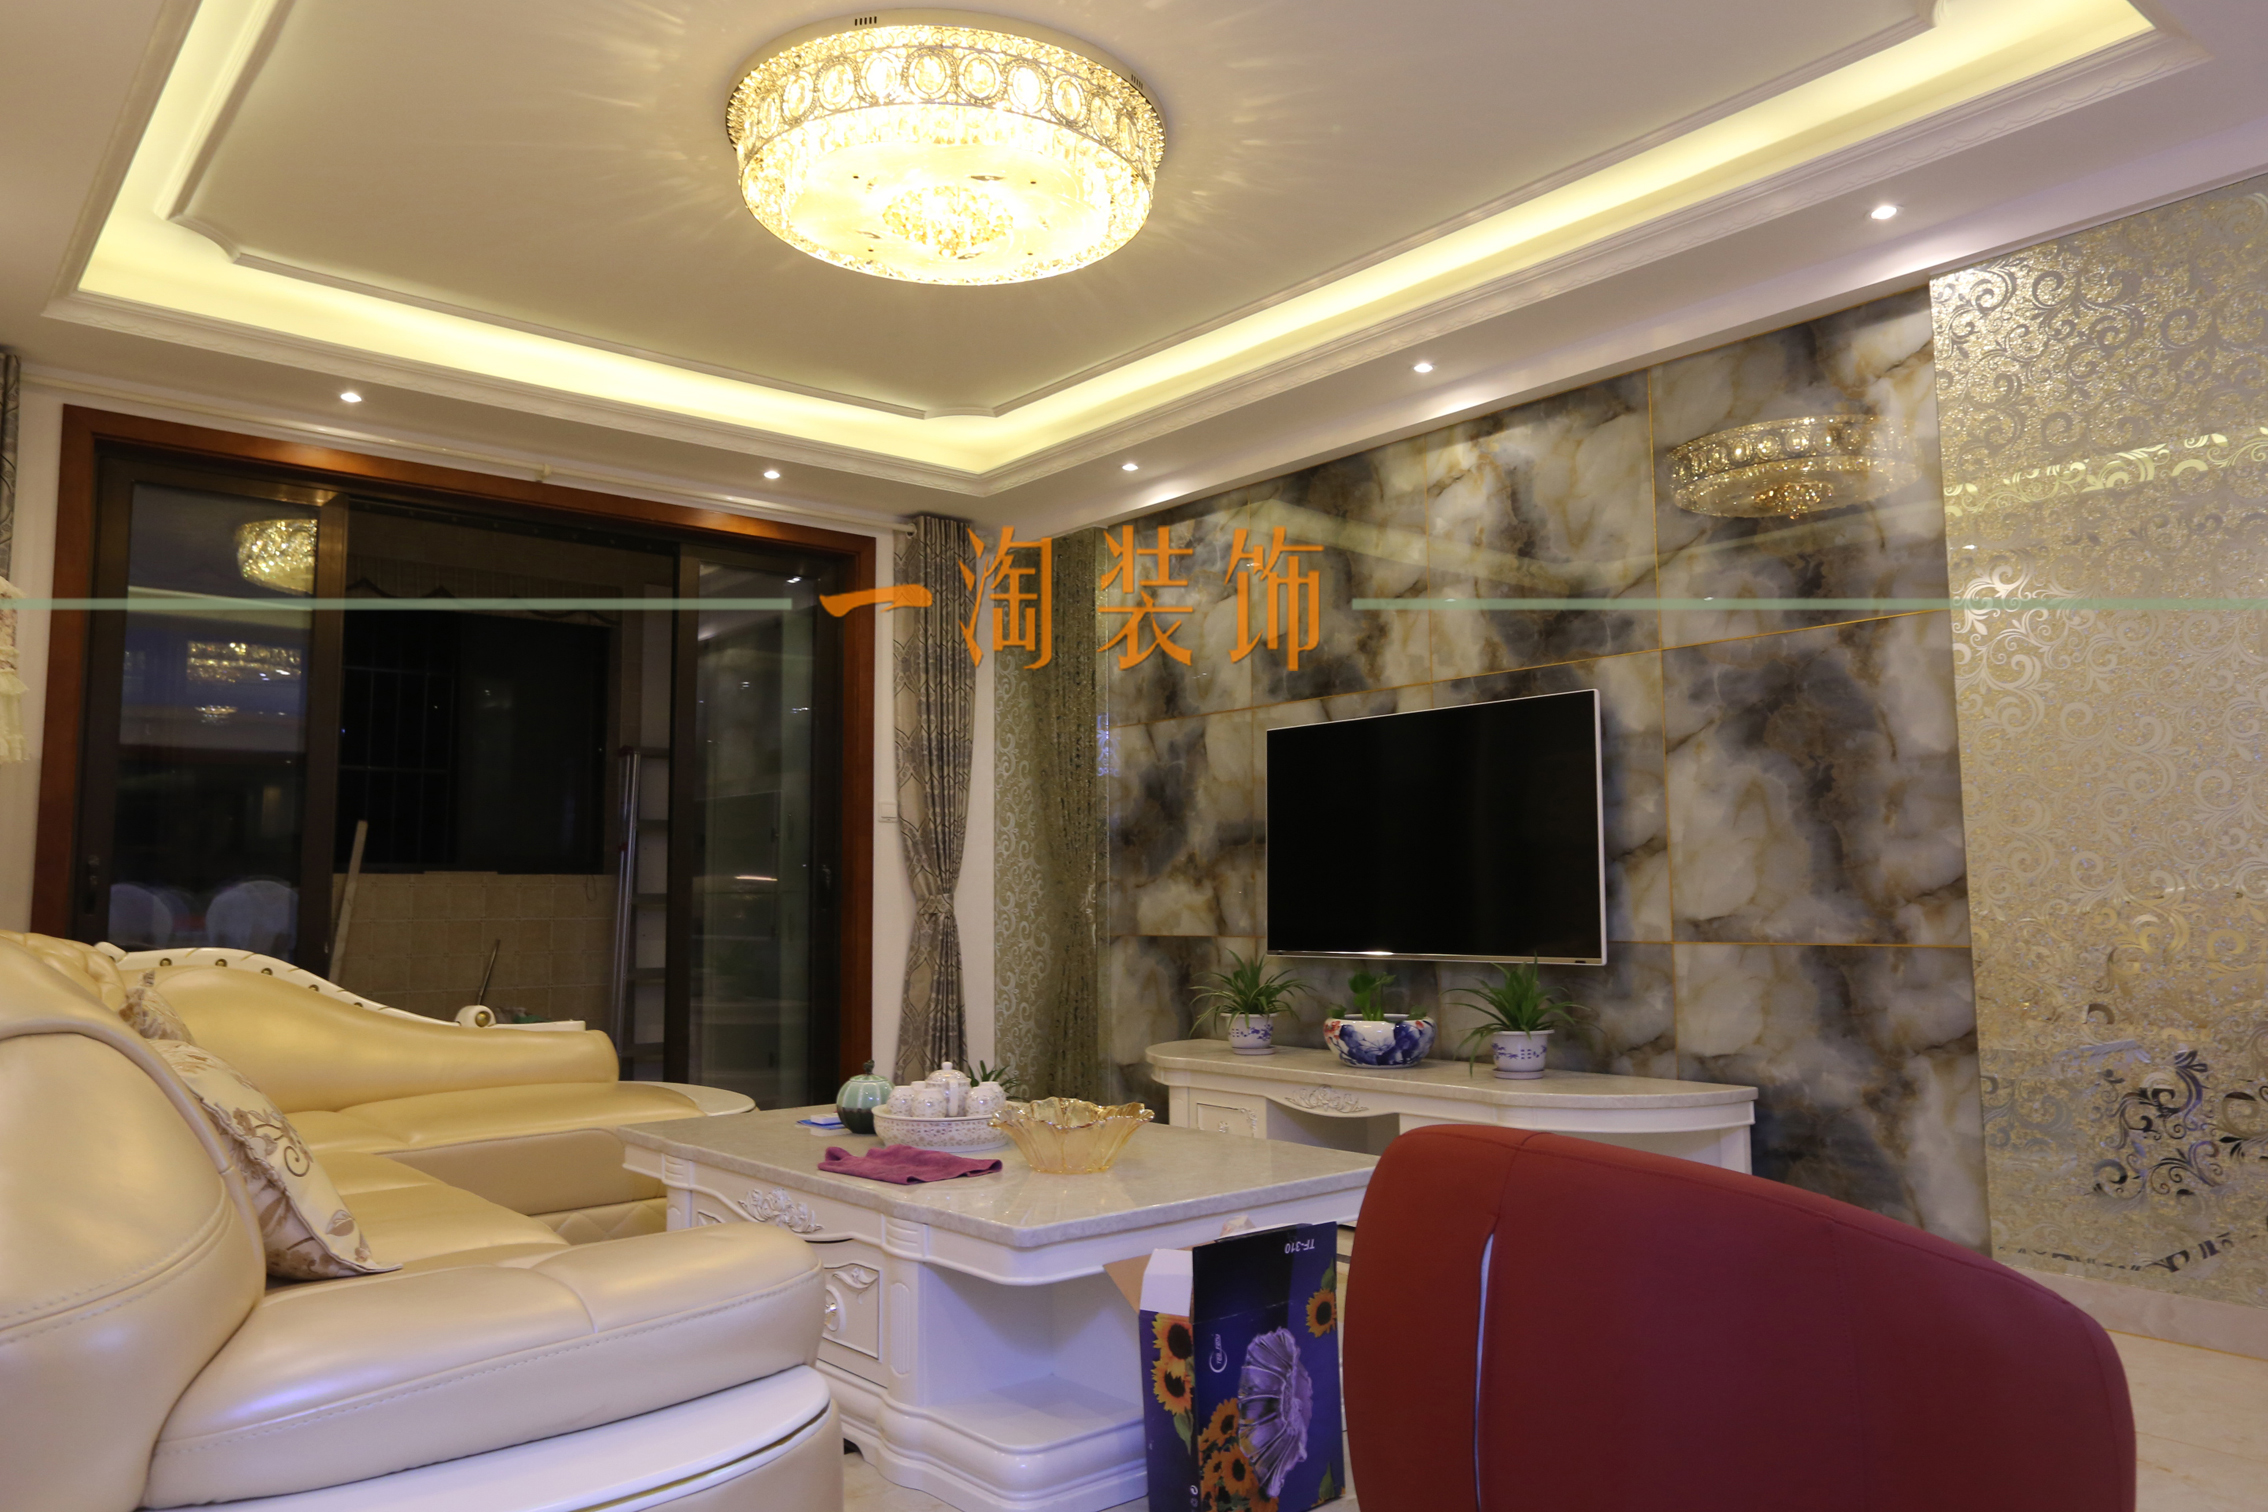 欧式 简约 客厅图片来自苏州一淘装饰在现代欧式梧桐公馆的分享